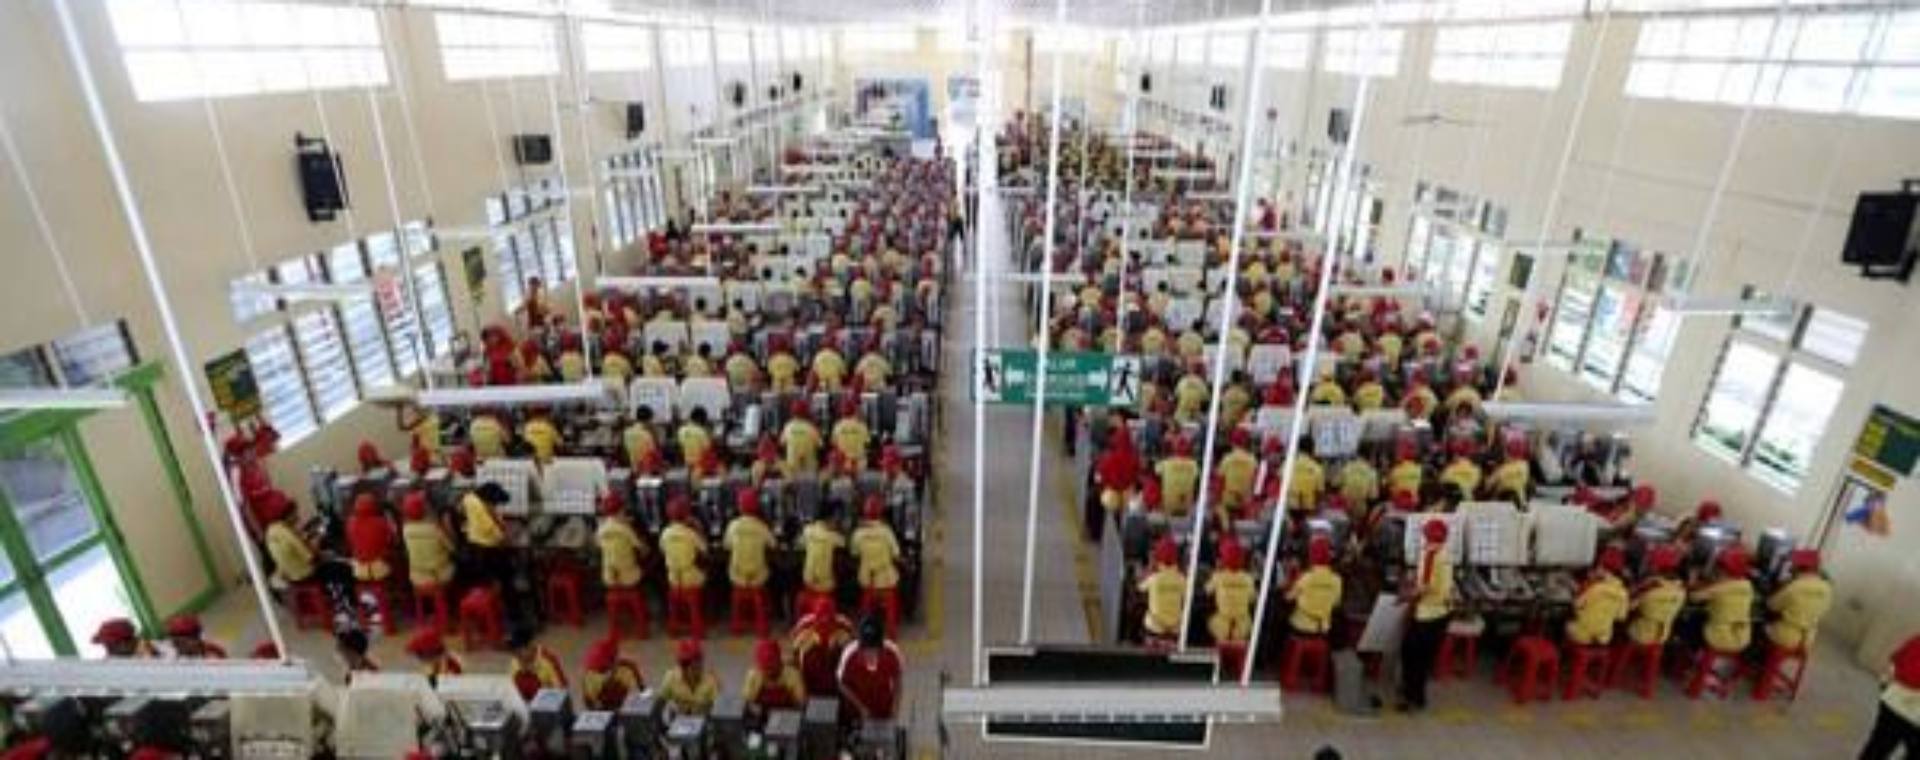 Pekerja PT HM Sampoerna Tbk melakukan aktivitas di pabrik sigaret kretek tangan (SKT) Sampoerna di Surabaya, Kamis (19/5/2016). - Antara